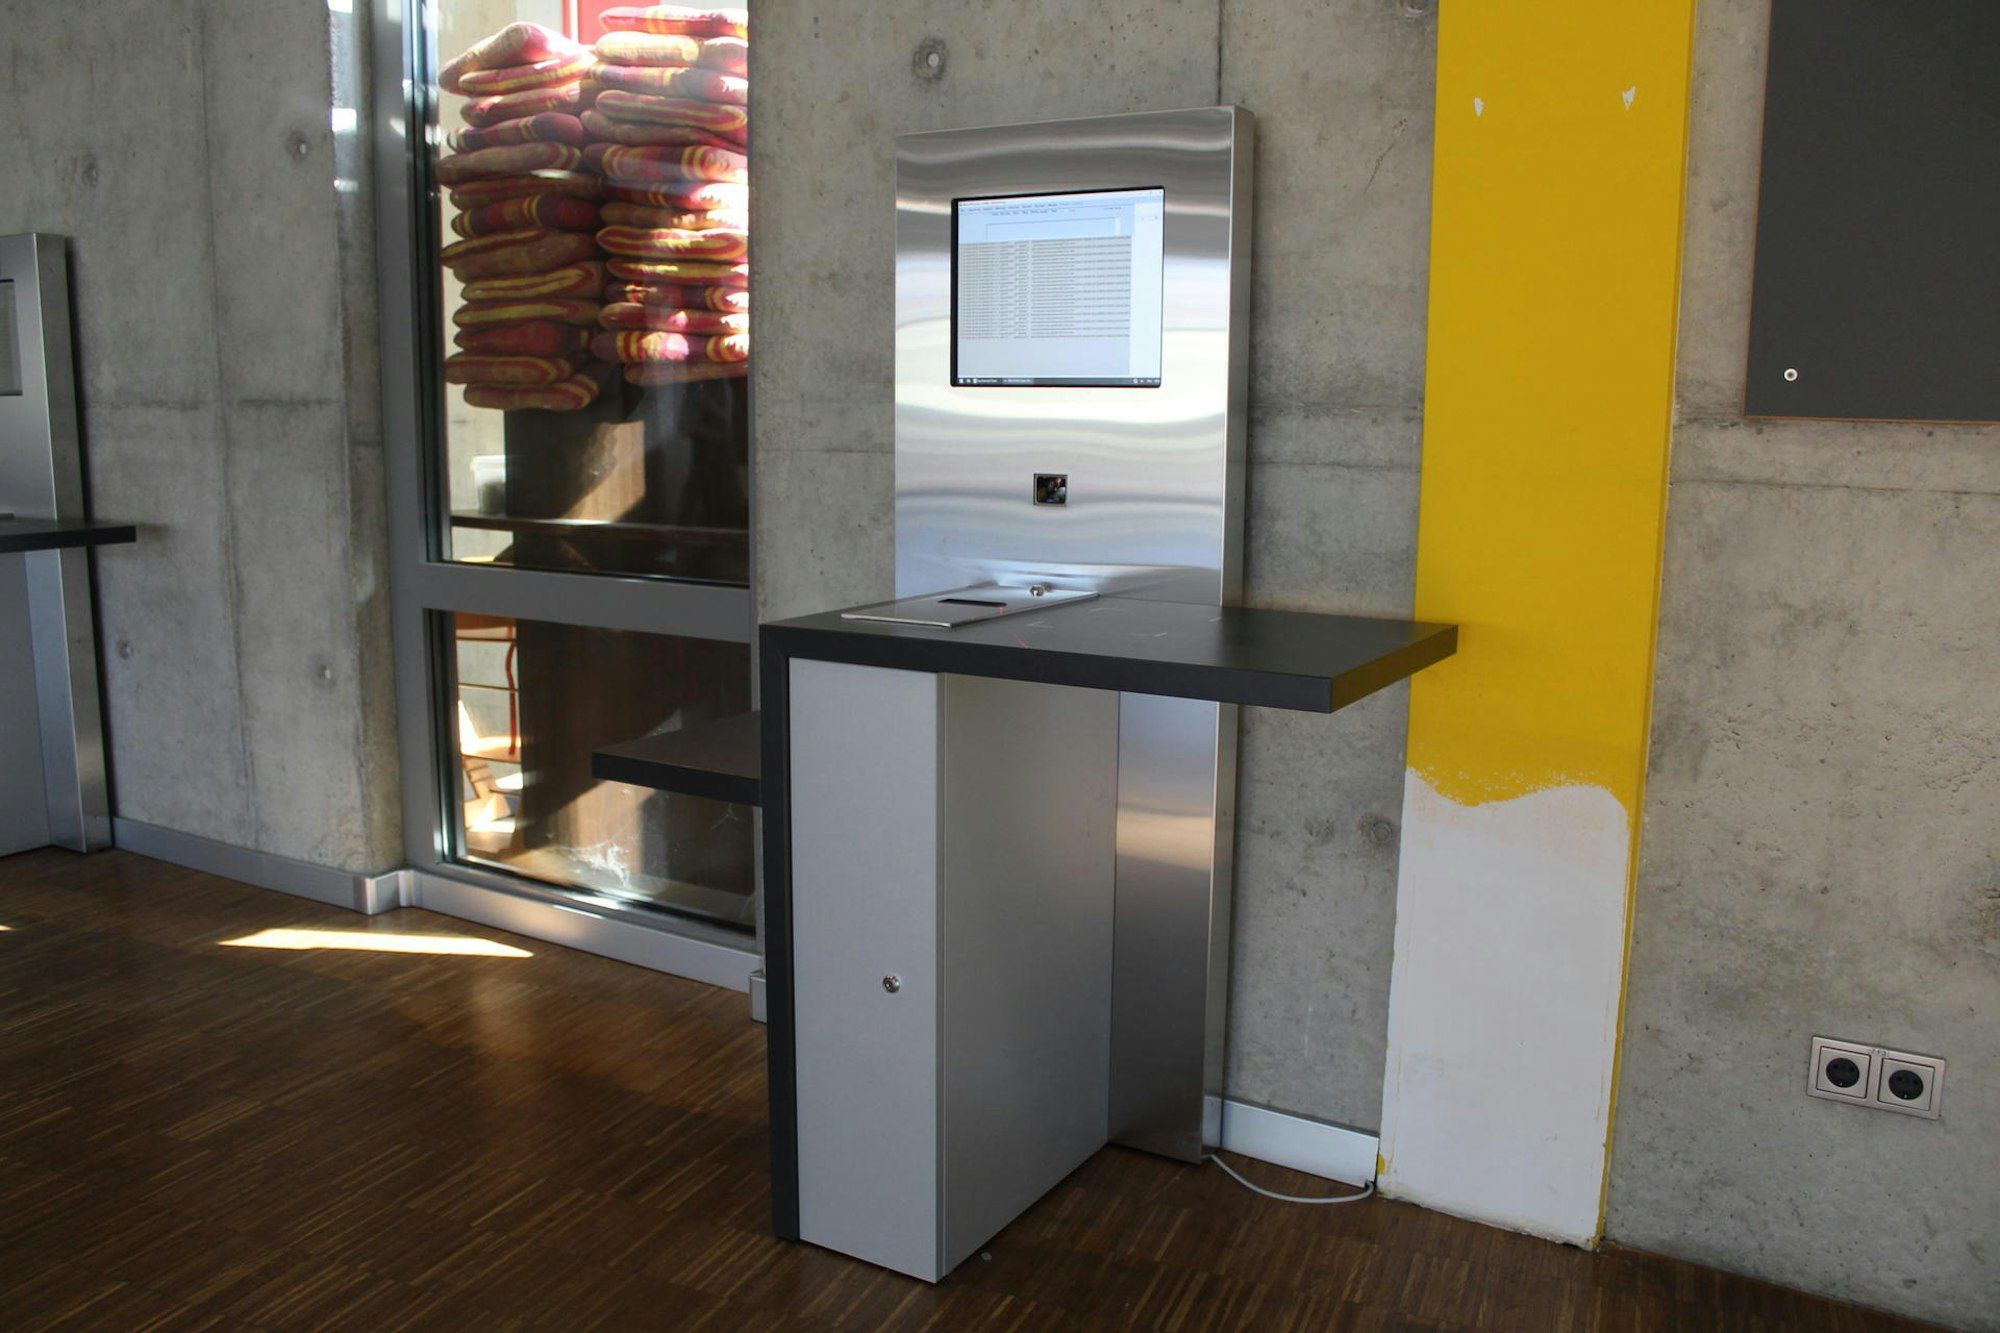 In der Bibliothek können die Besucher über diese Automaten Bücher ausleihen.